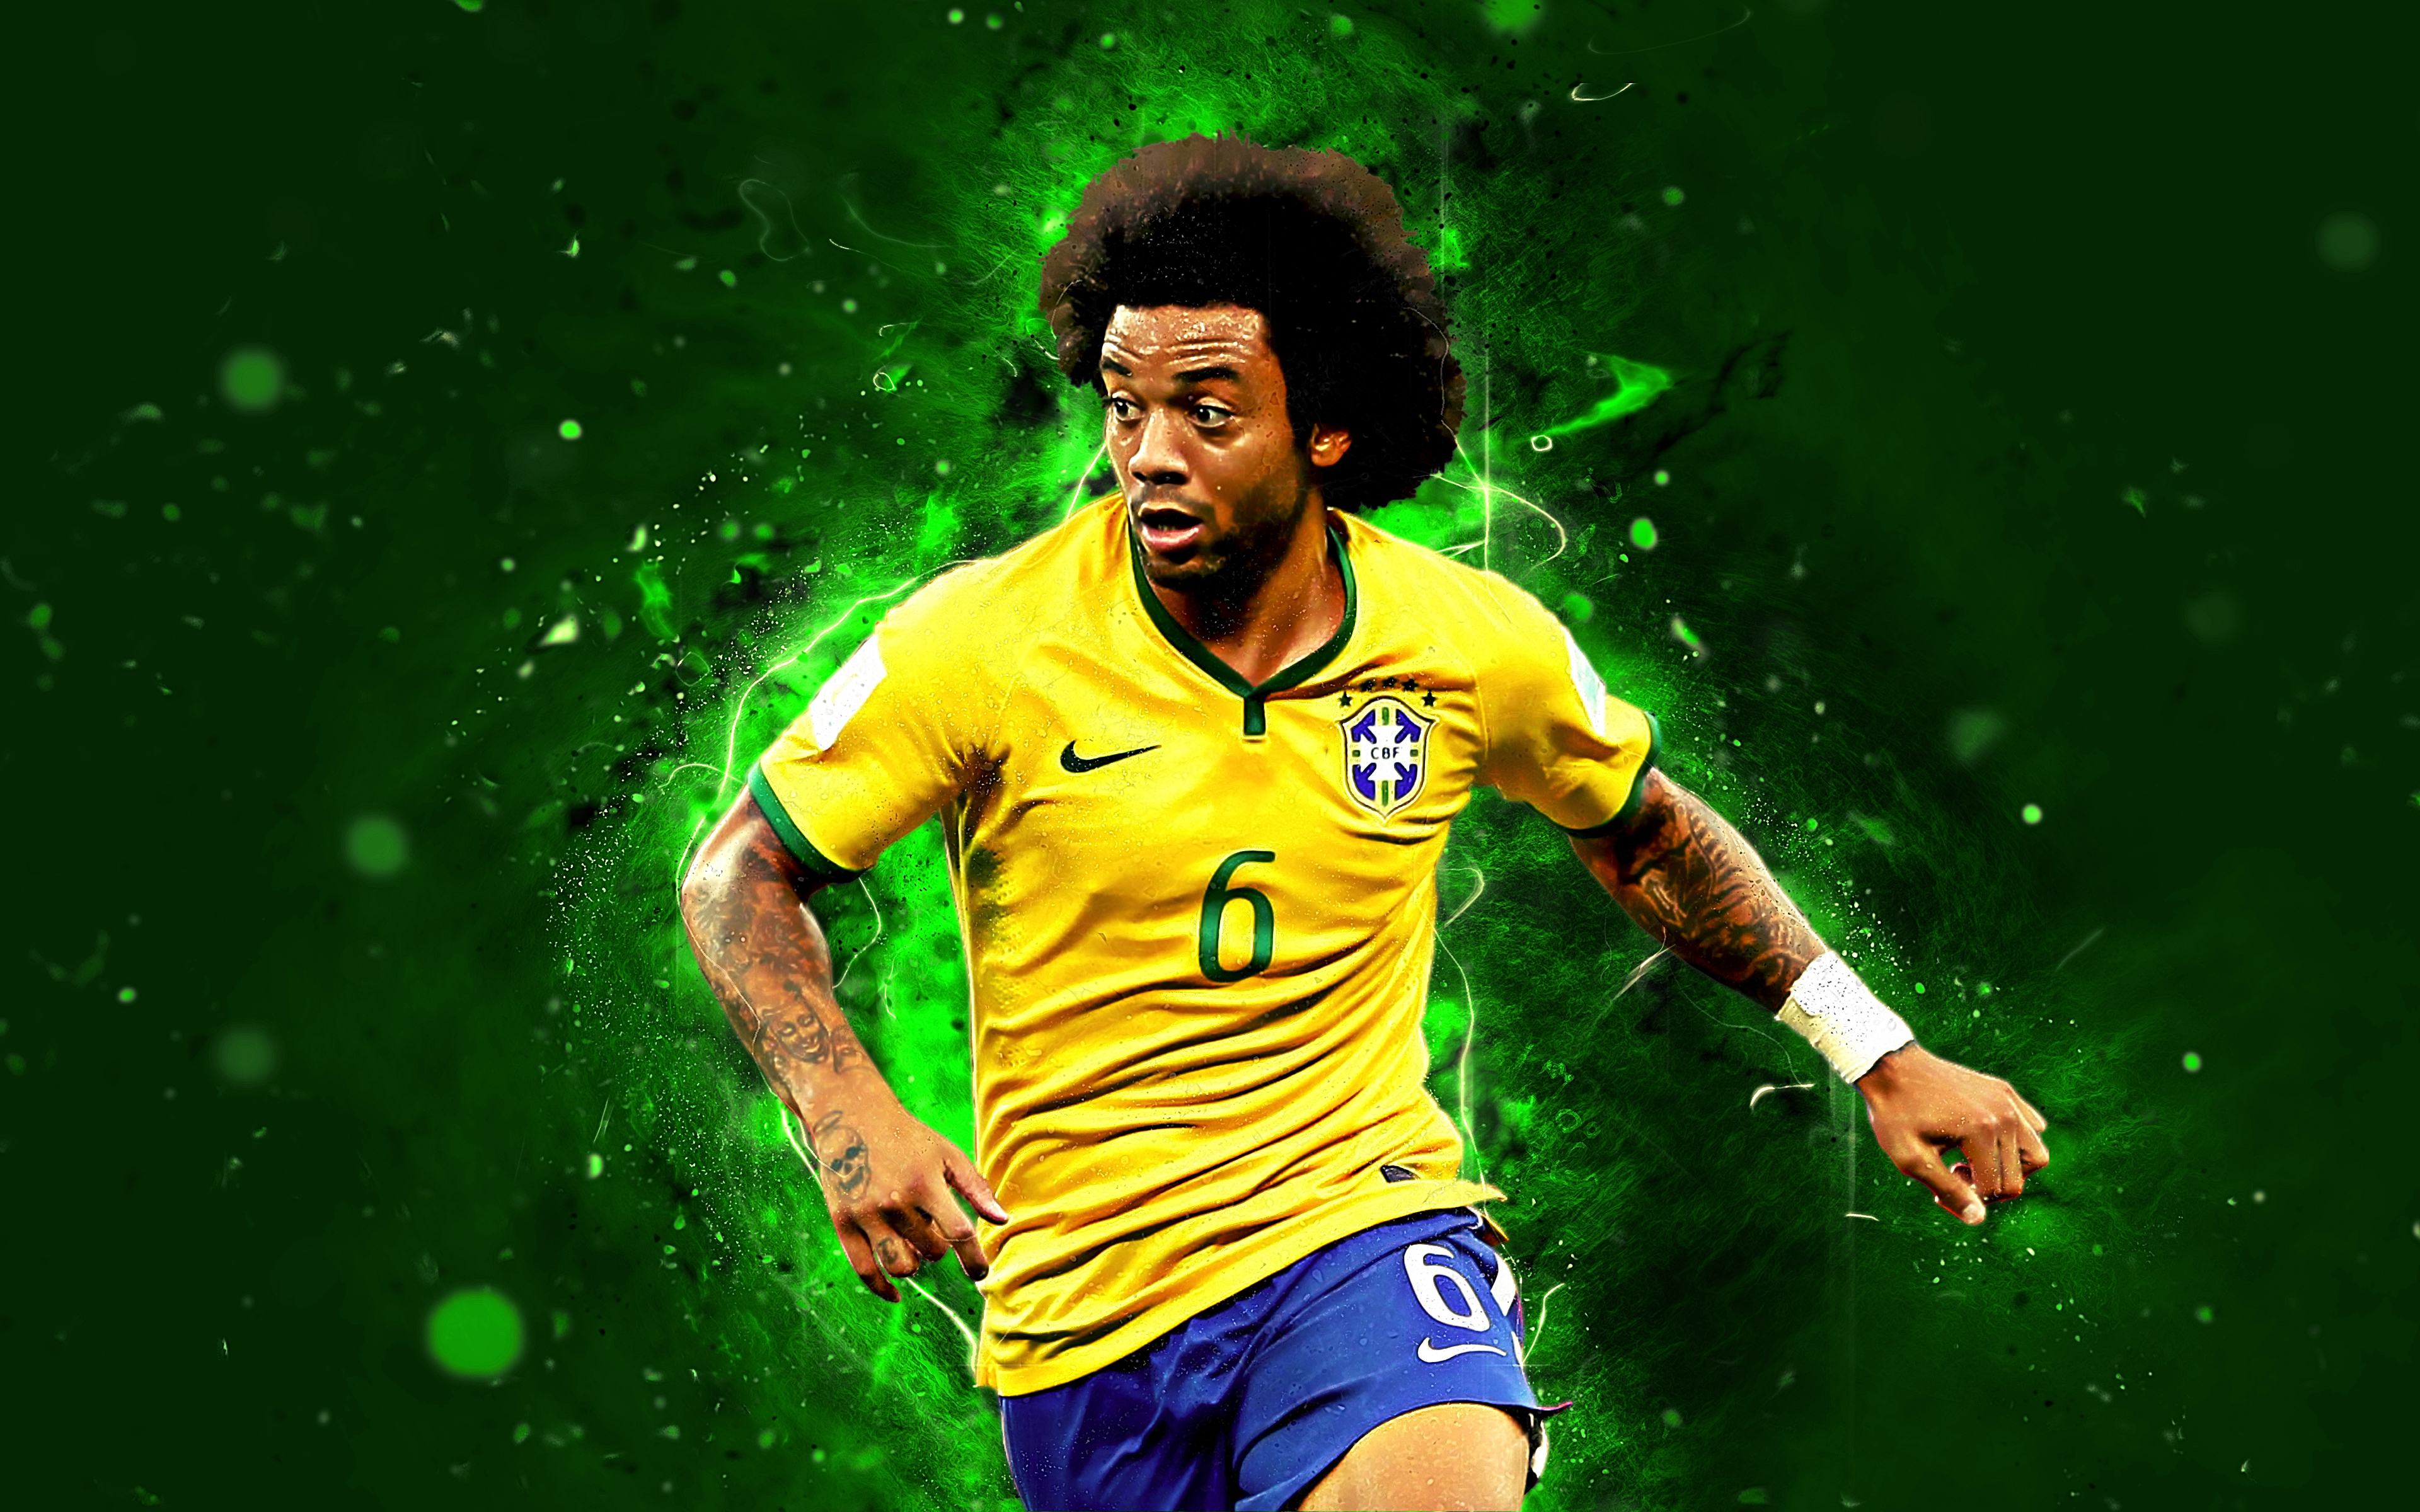 Marcelo - Brazil